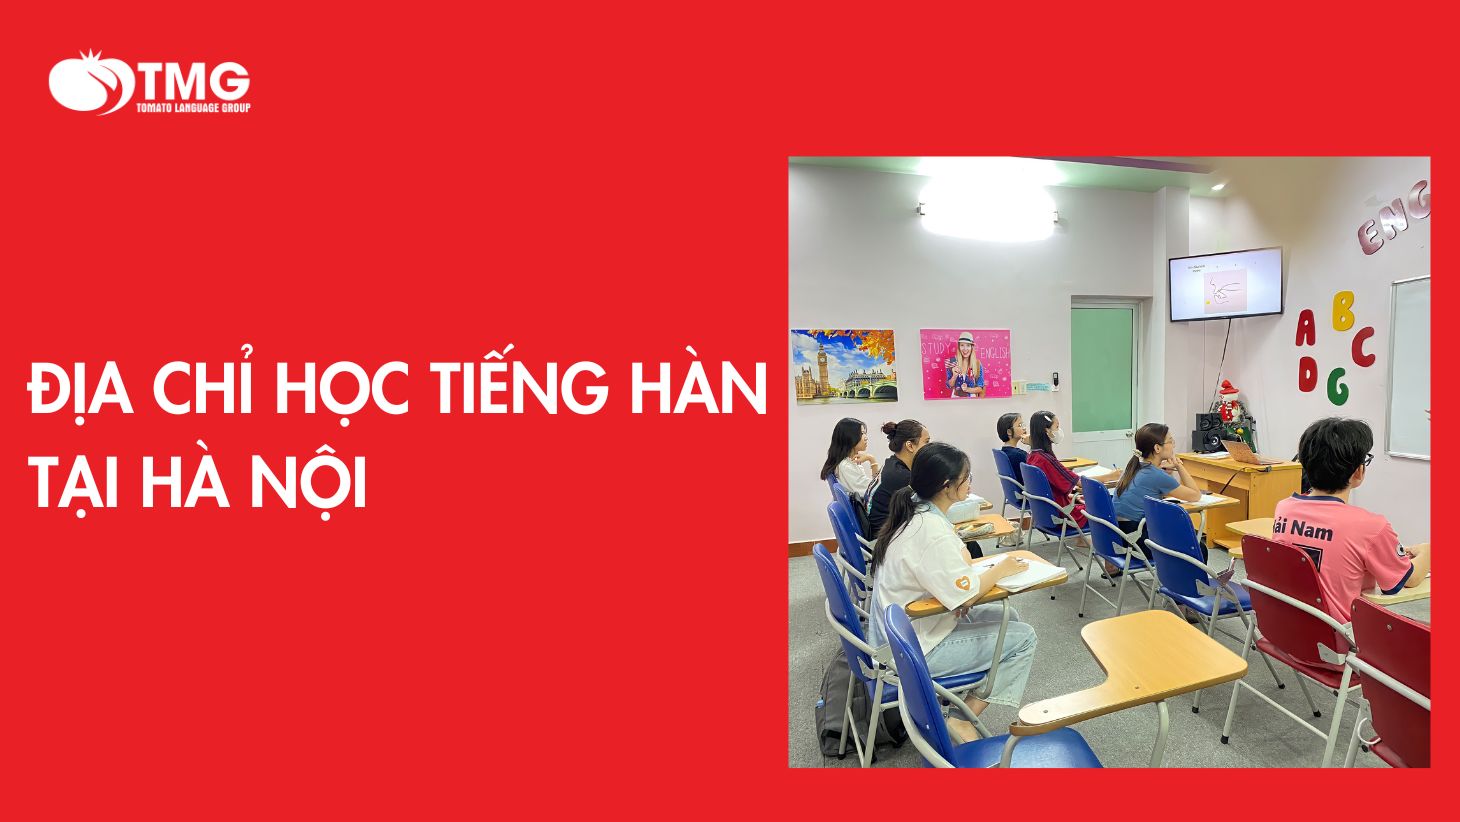 Địa chỉ học tiếng Hàn ở Hà Nội uy tín chất lượng